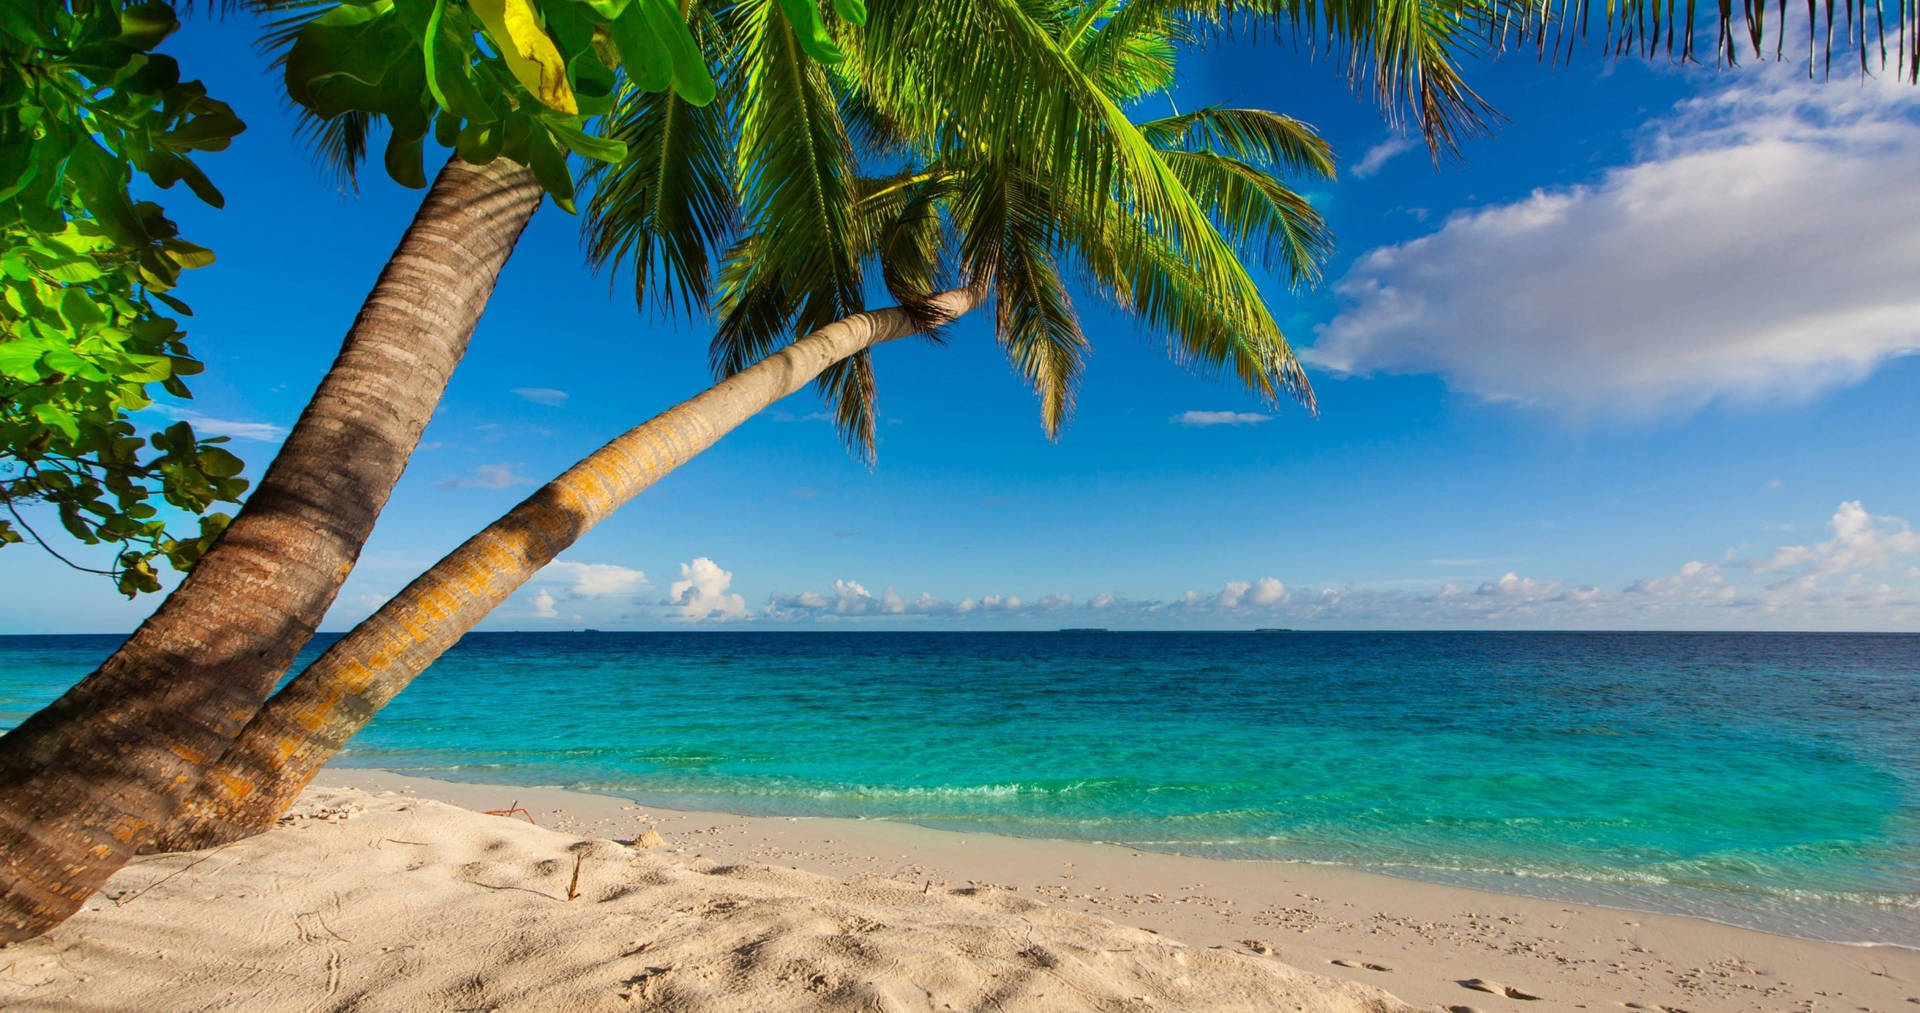 4k Beach With Palm Tree